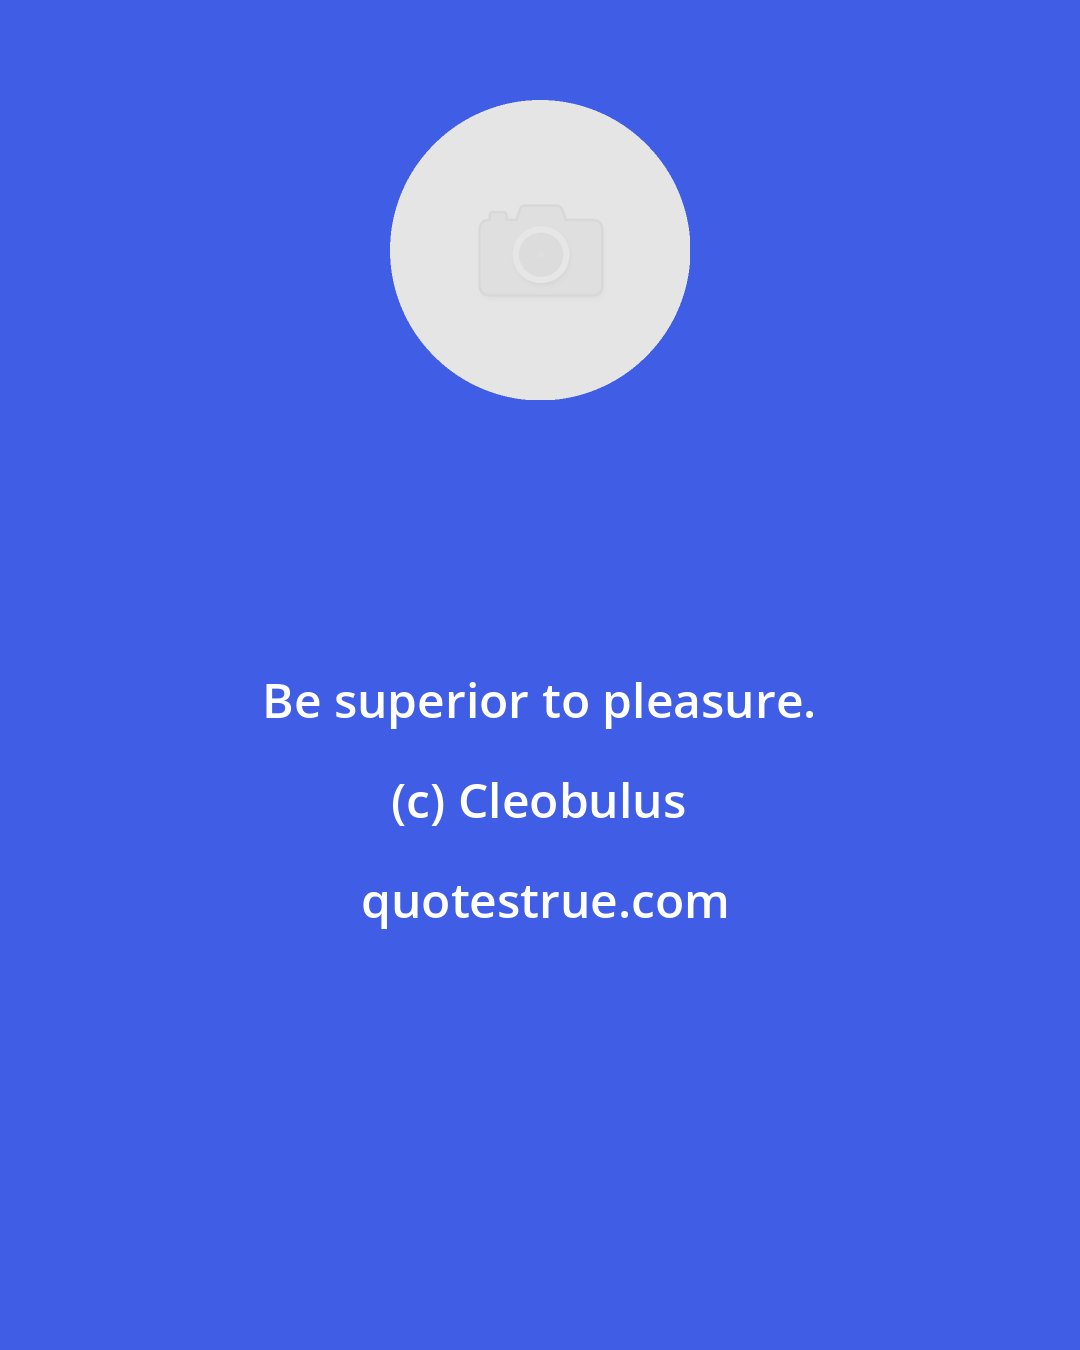 Cleobulus: Be superior to pleasure.